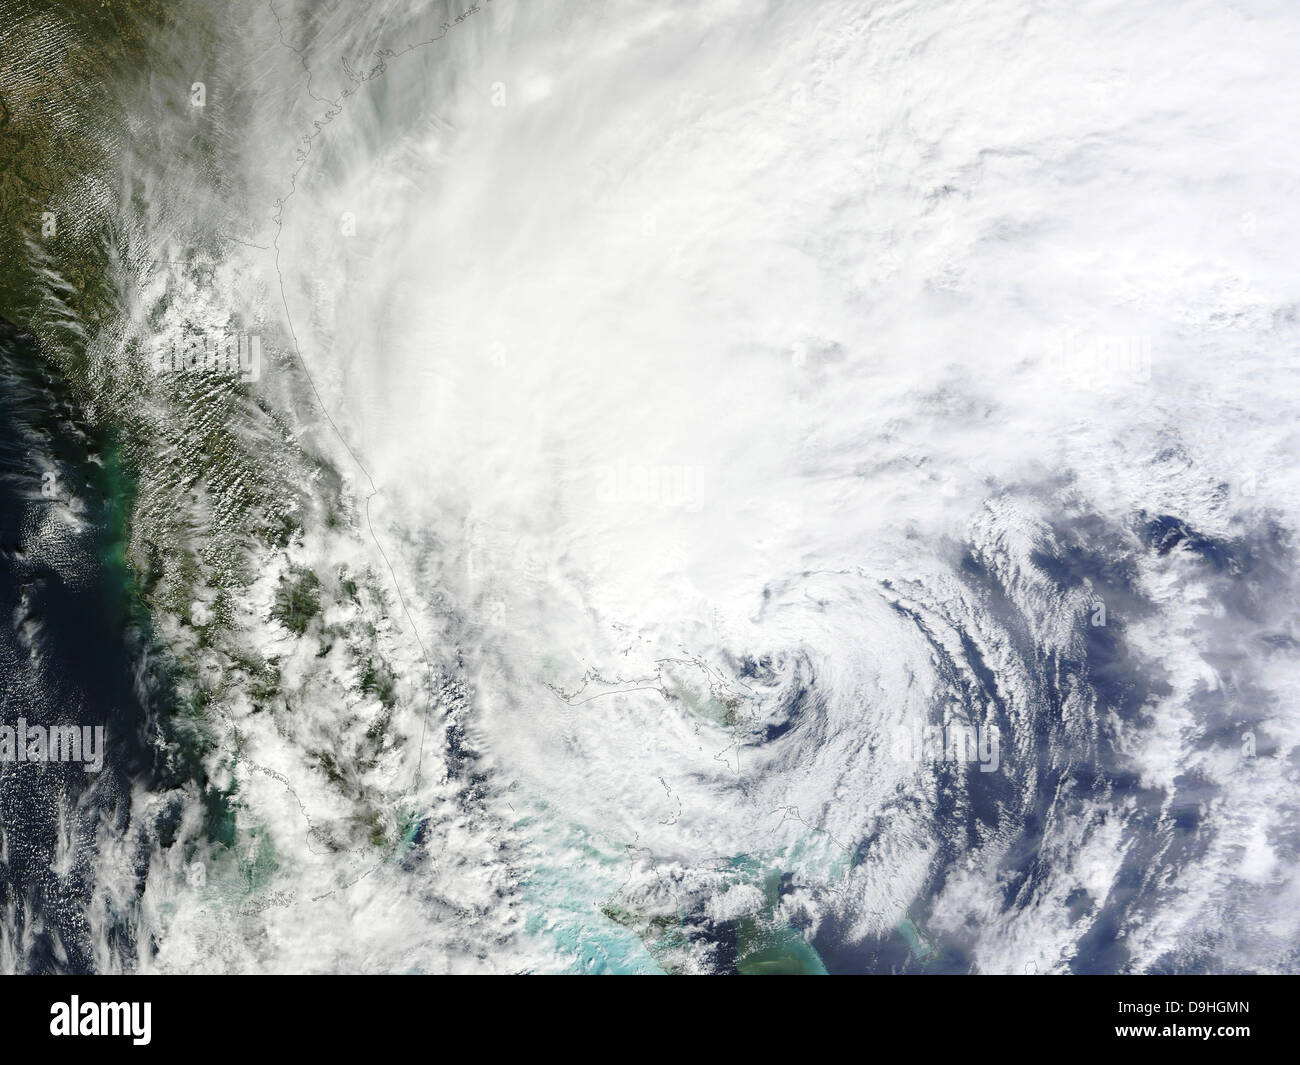 Ottobre 26, 2012 - uragano Sandy oltre alle Bahamas, con l'occhio della tempesta nei pressi dell'isola di Grand Bahama. Foto Stock